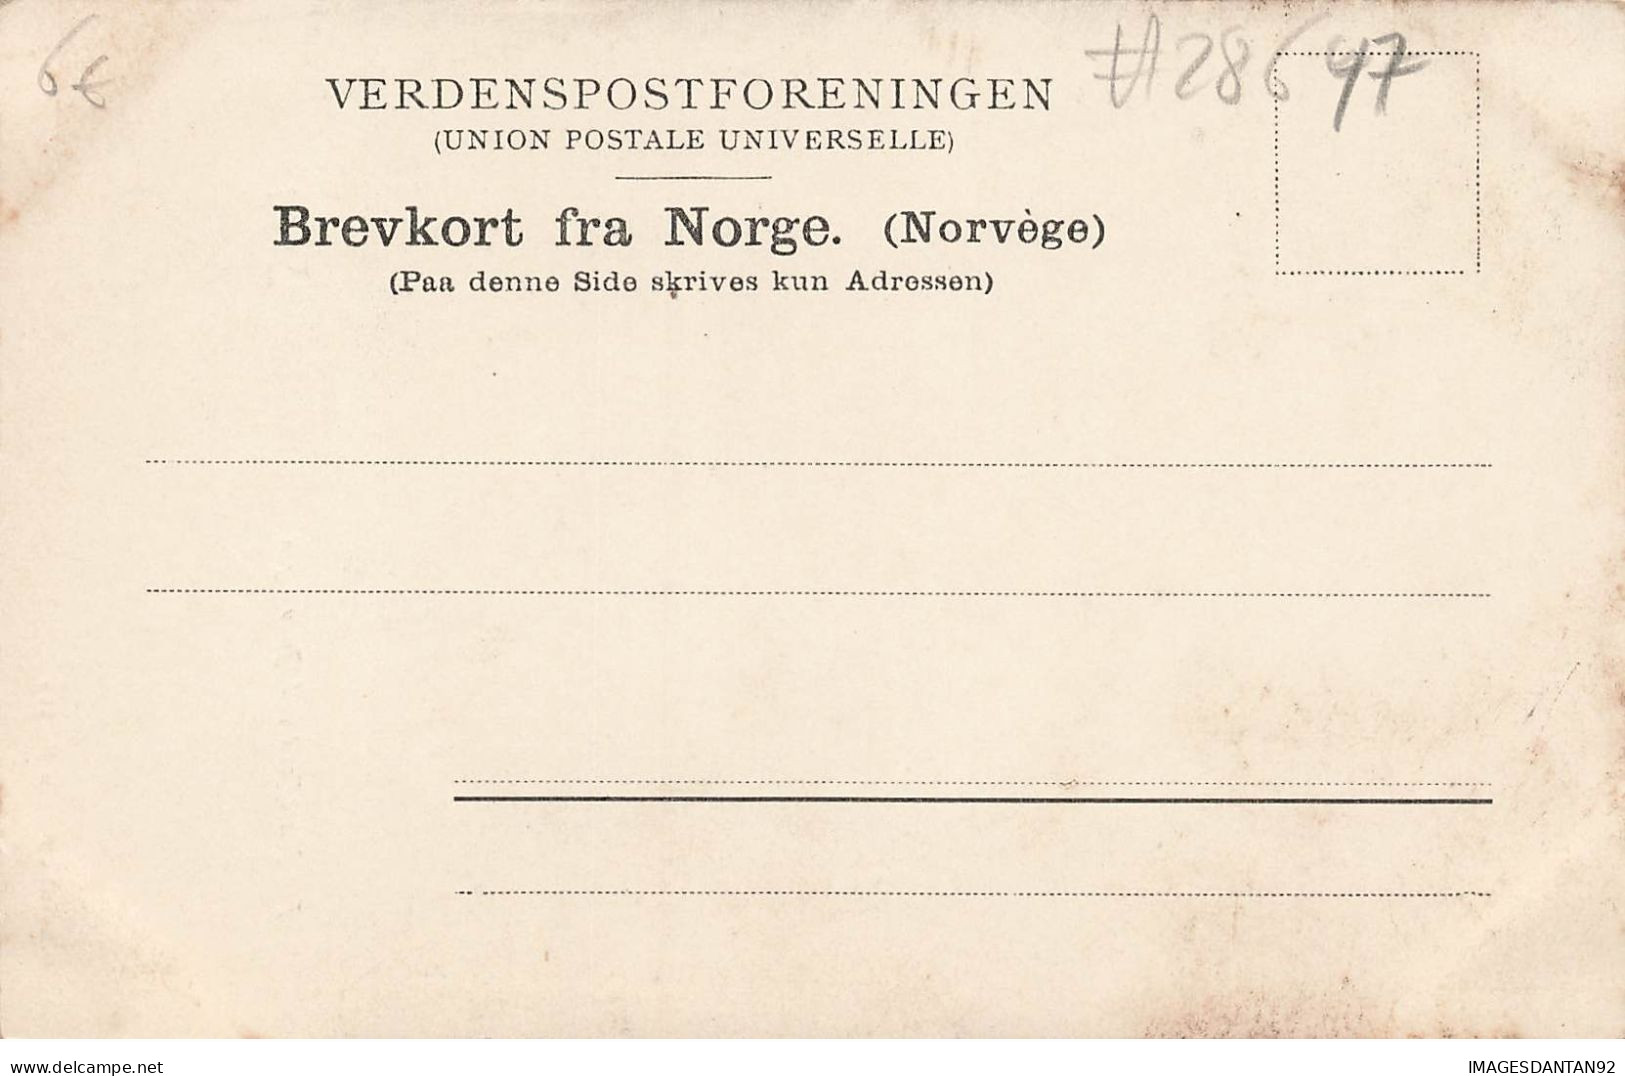 NORVEGE #28647 NORWEGEN SOGN FRA NOERDFJORD VED GUDVANGEN - Norvège